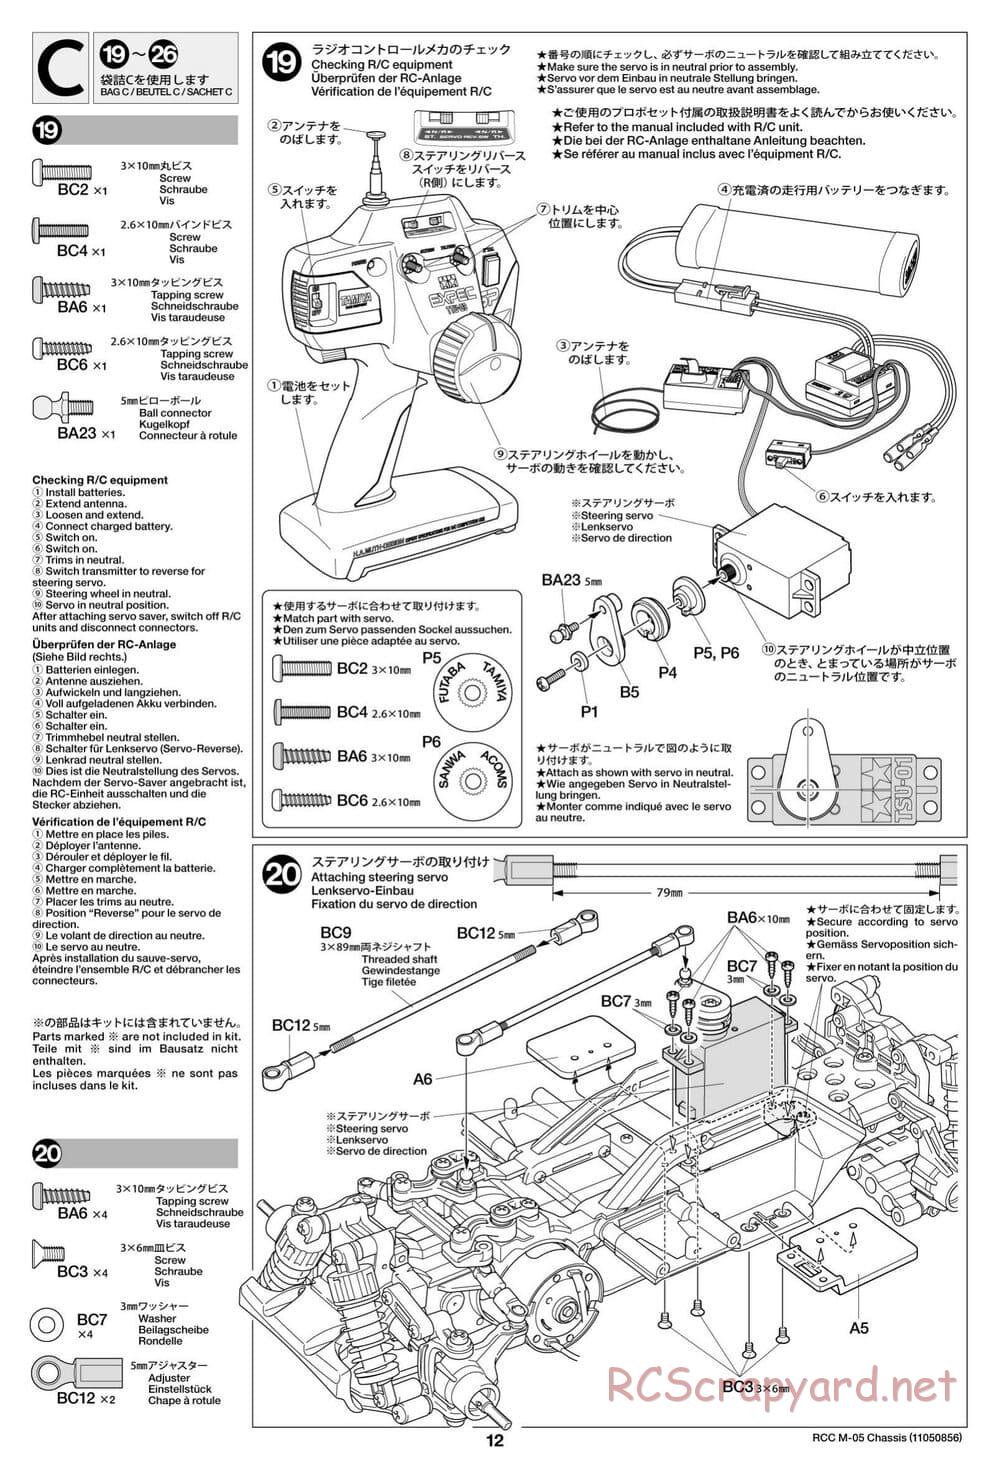 Tamiya - M-05 Chassis - Manual - Page 12